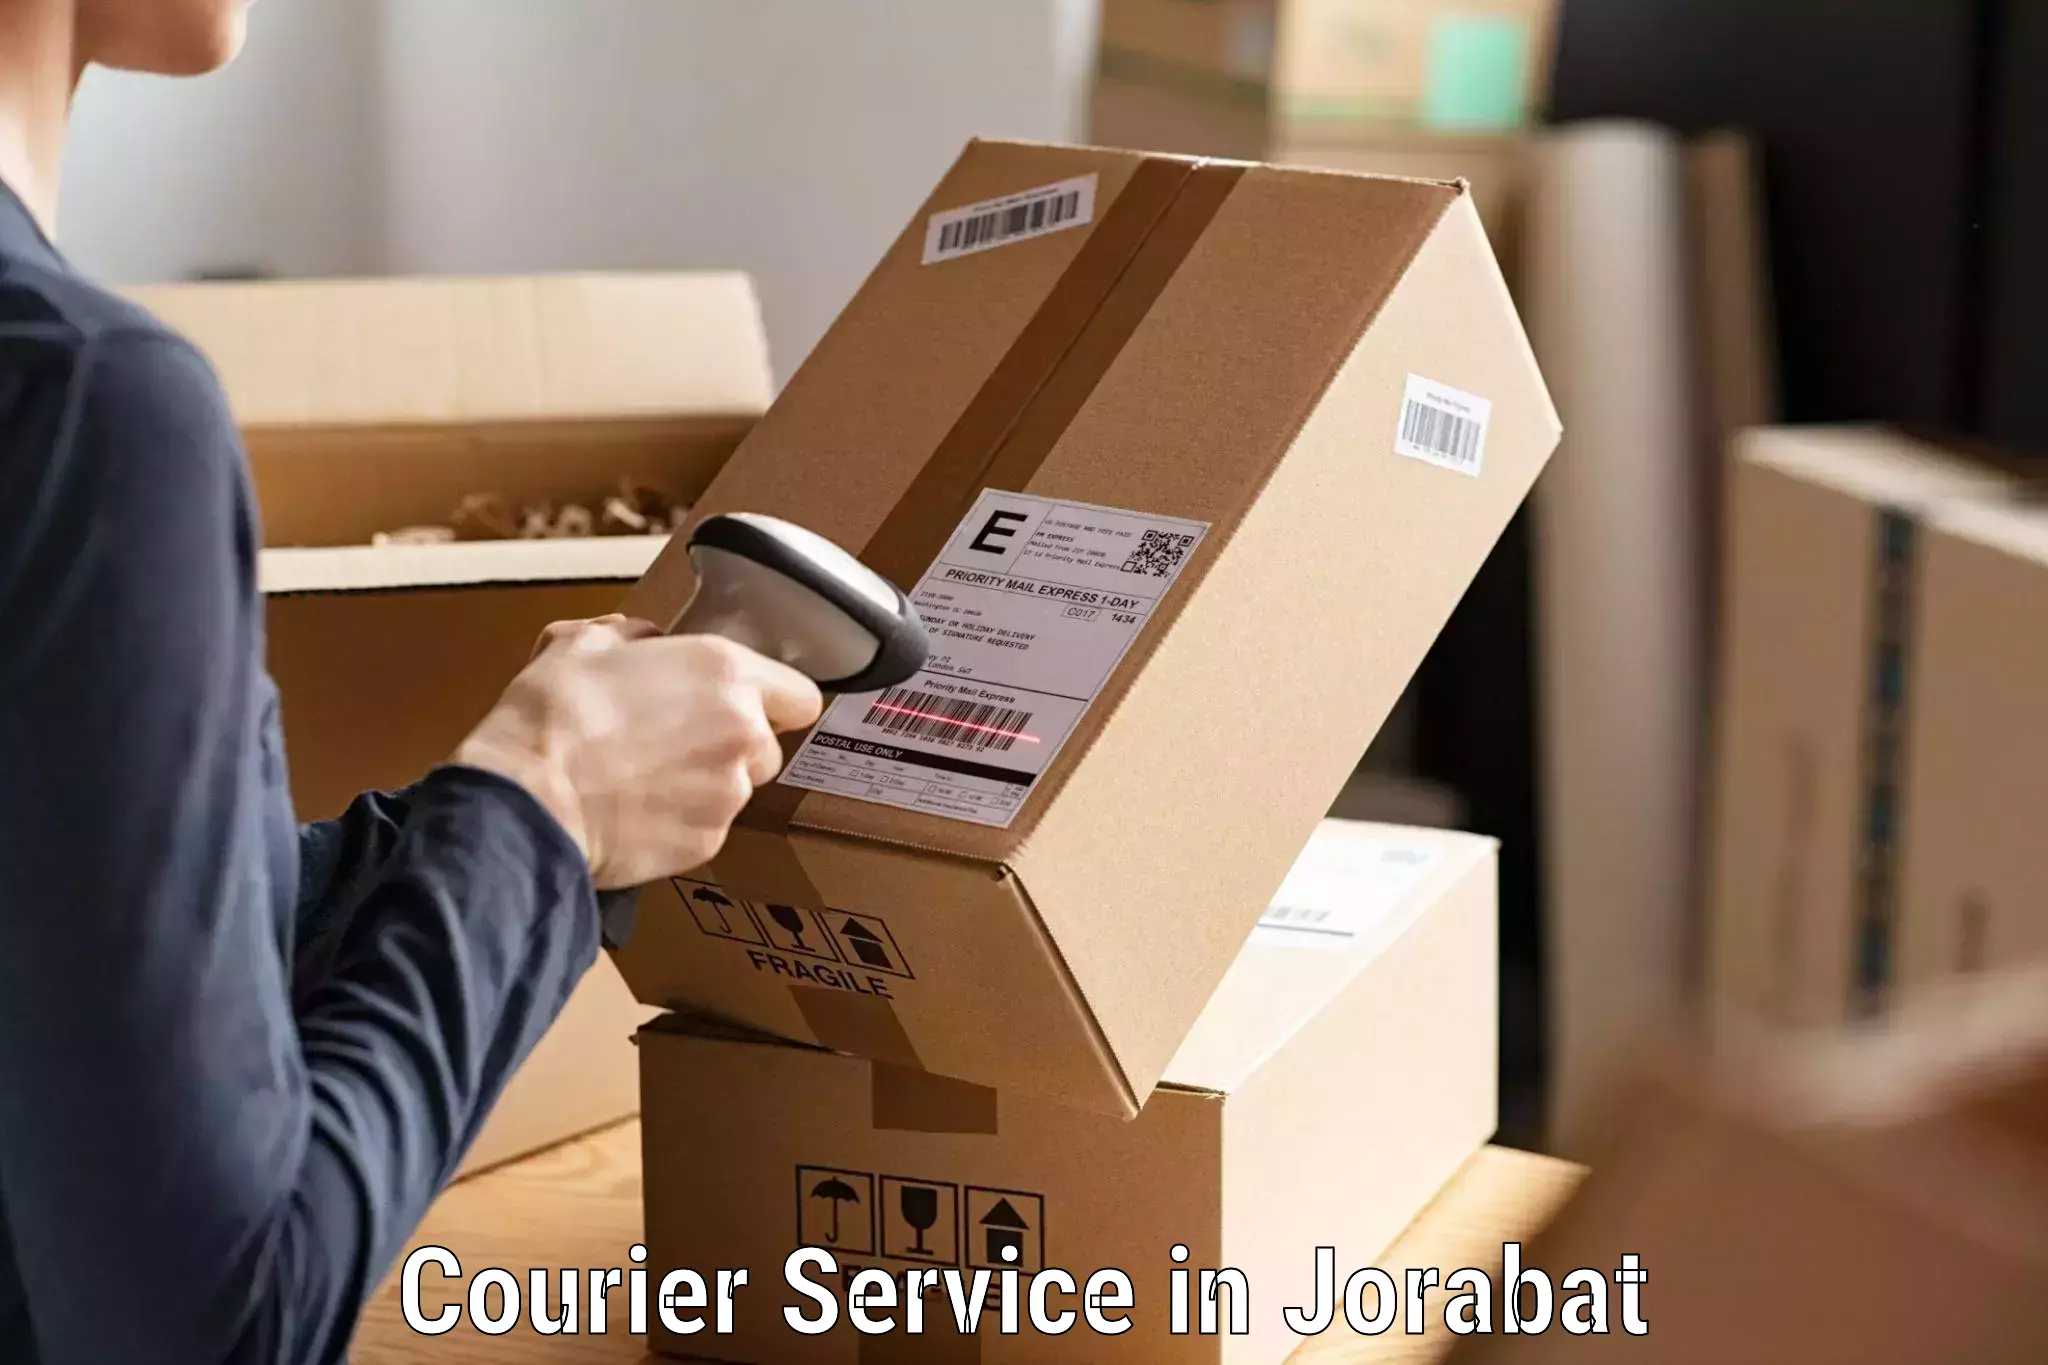 Flexible parcel services in Jorabat